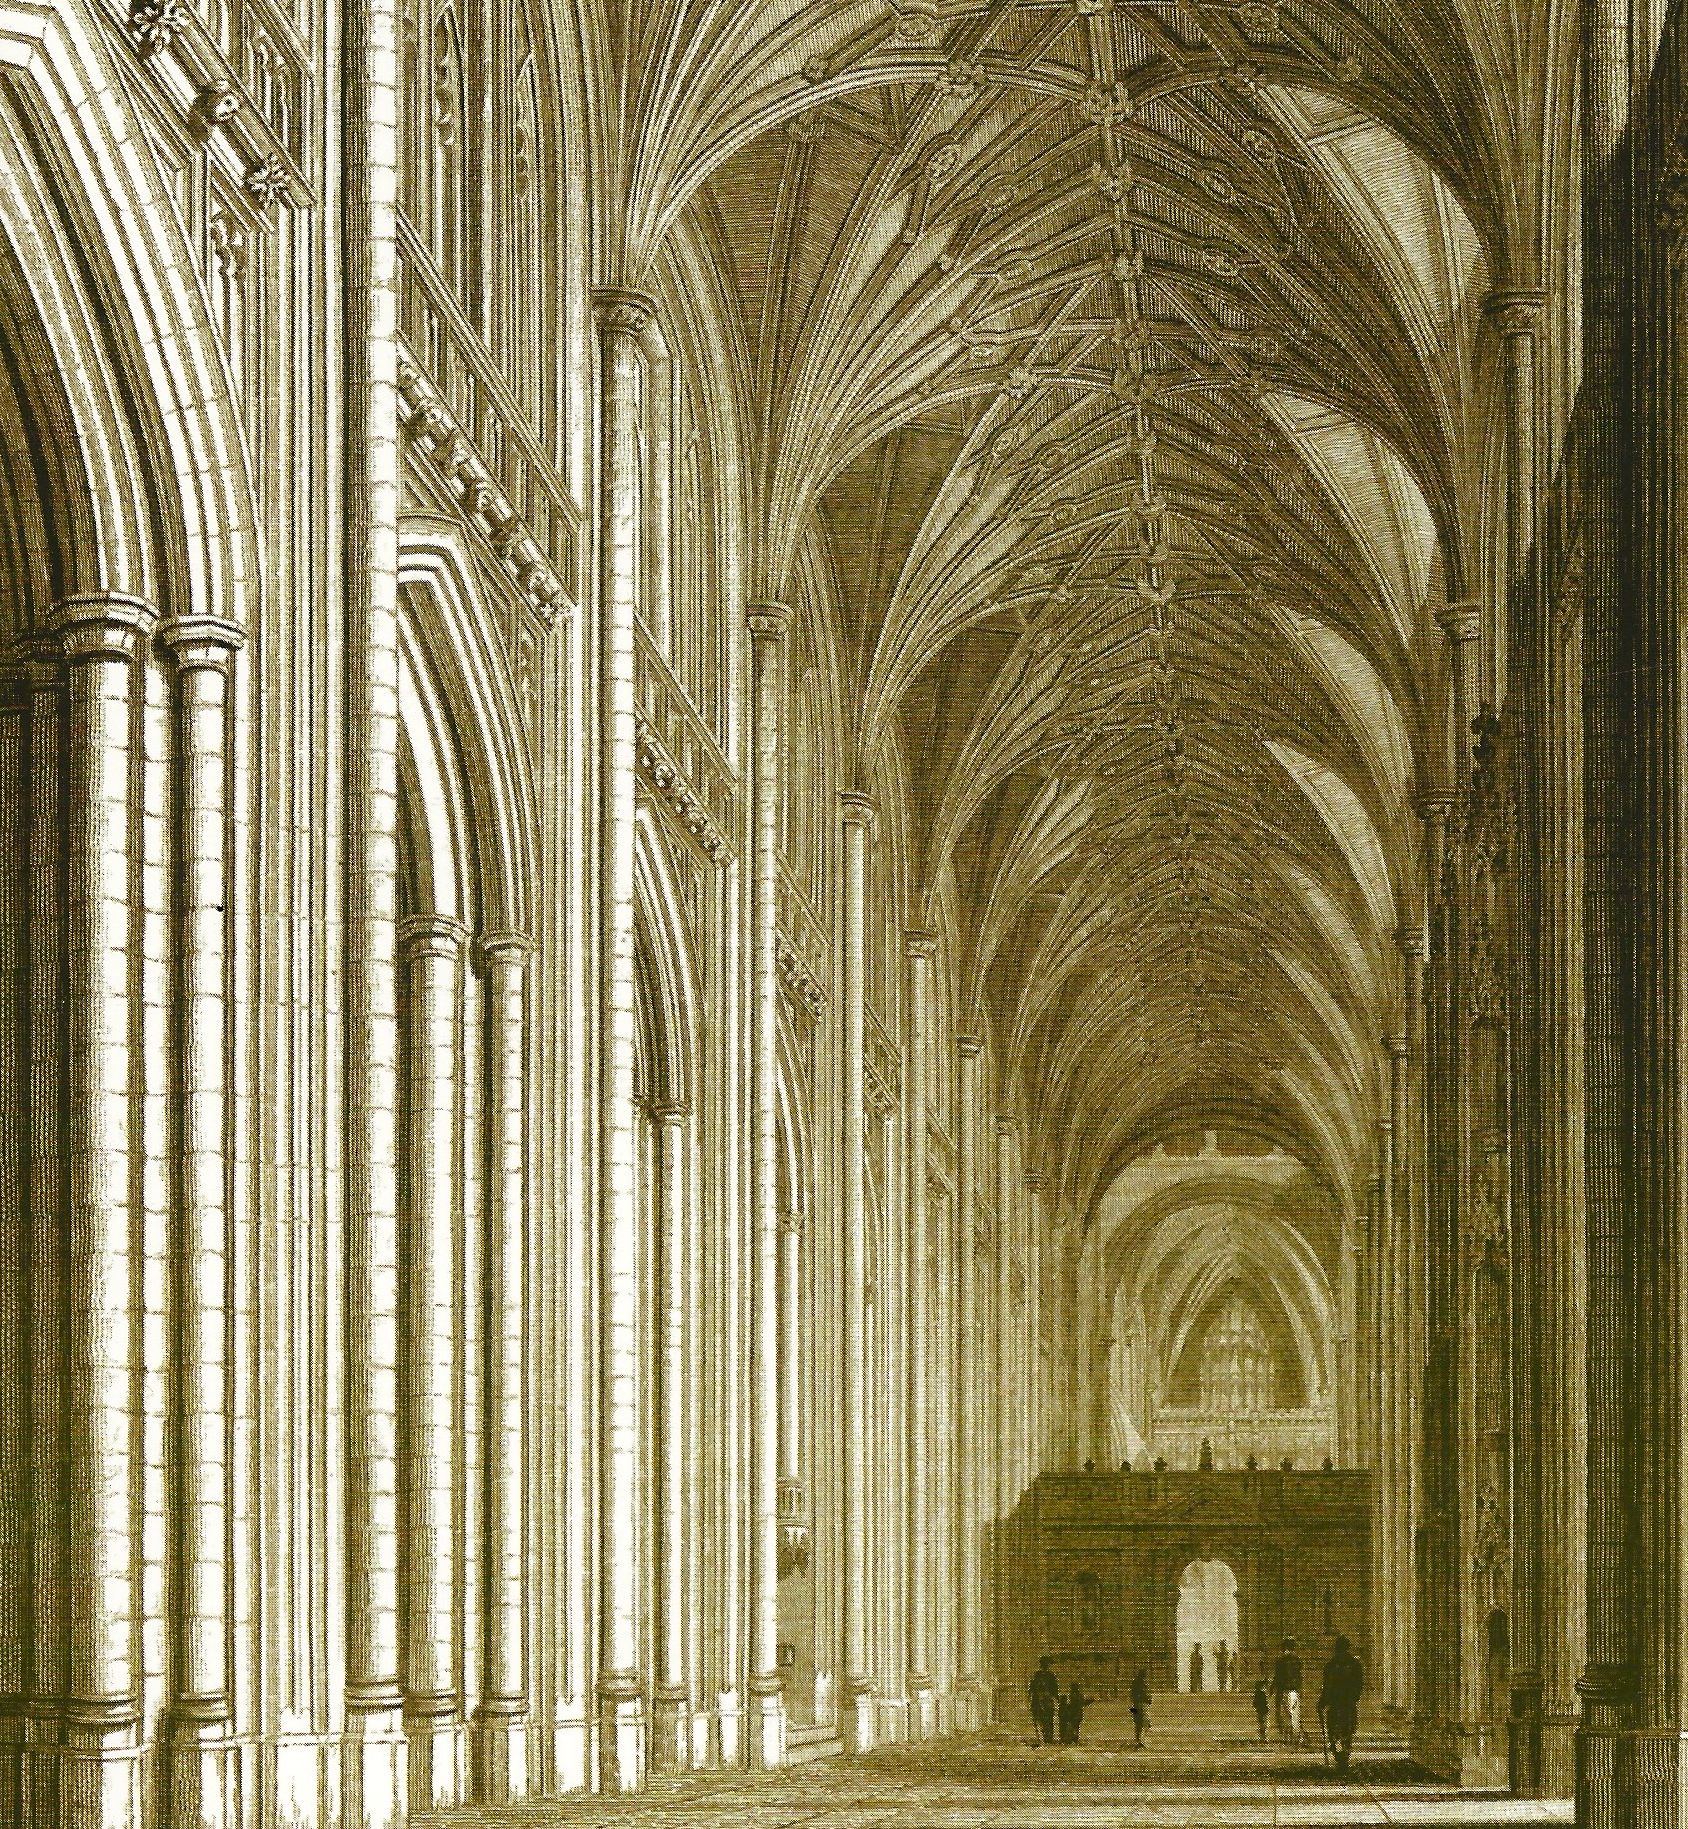 La cathédrale de Winchester